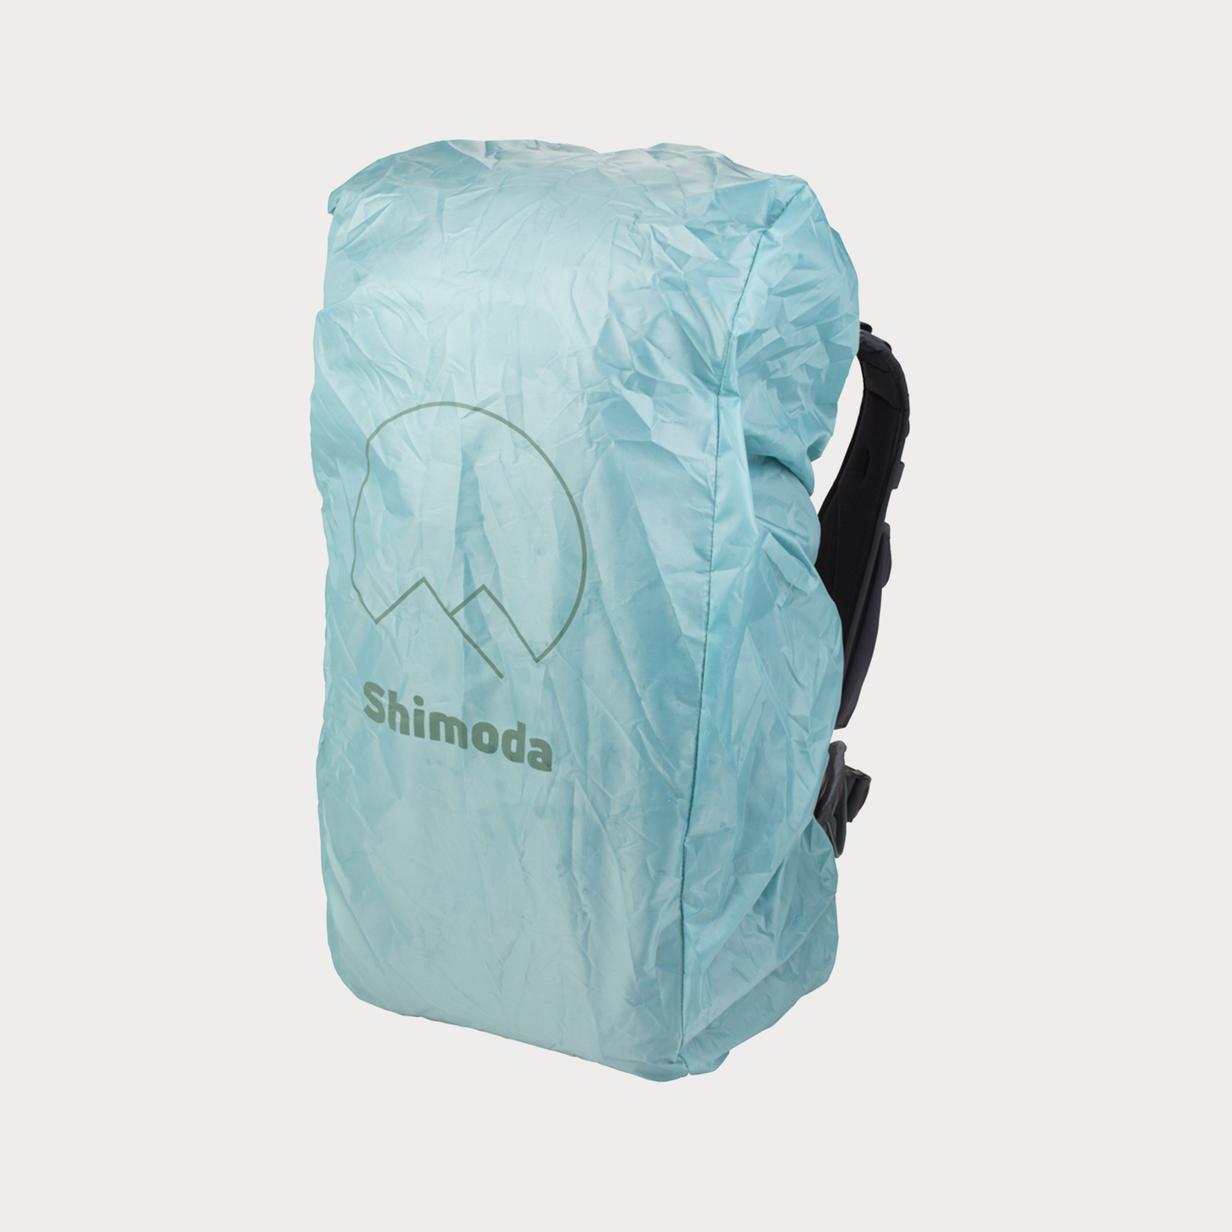 Moment Shimoda 520 096 Rain Cover for 40 60 L Backpacks 02